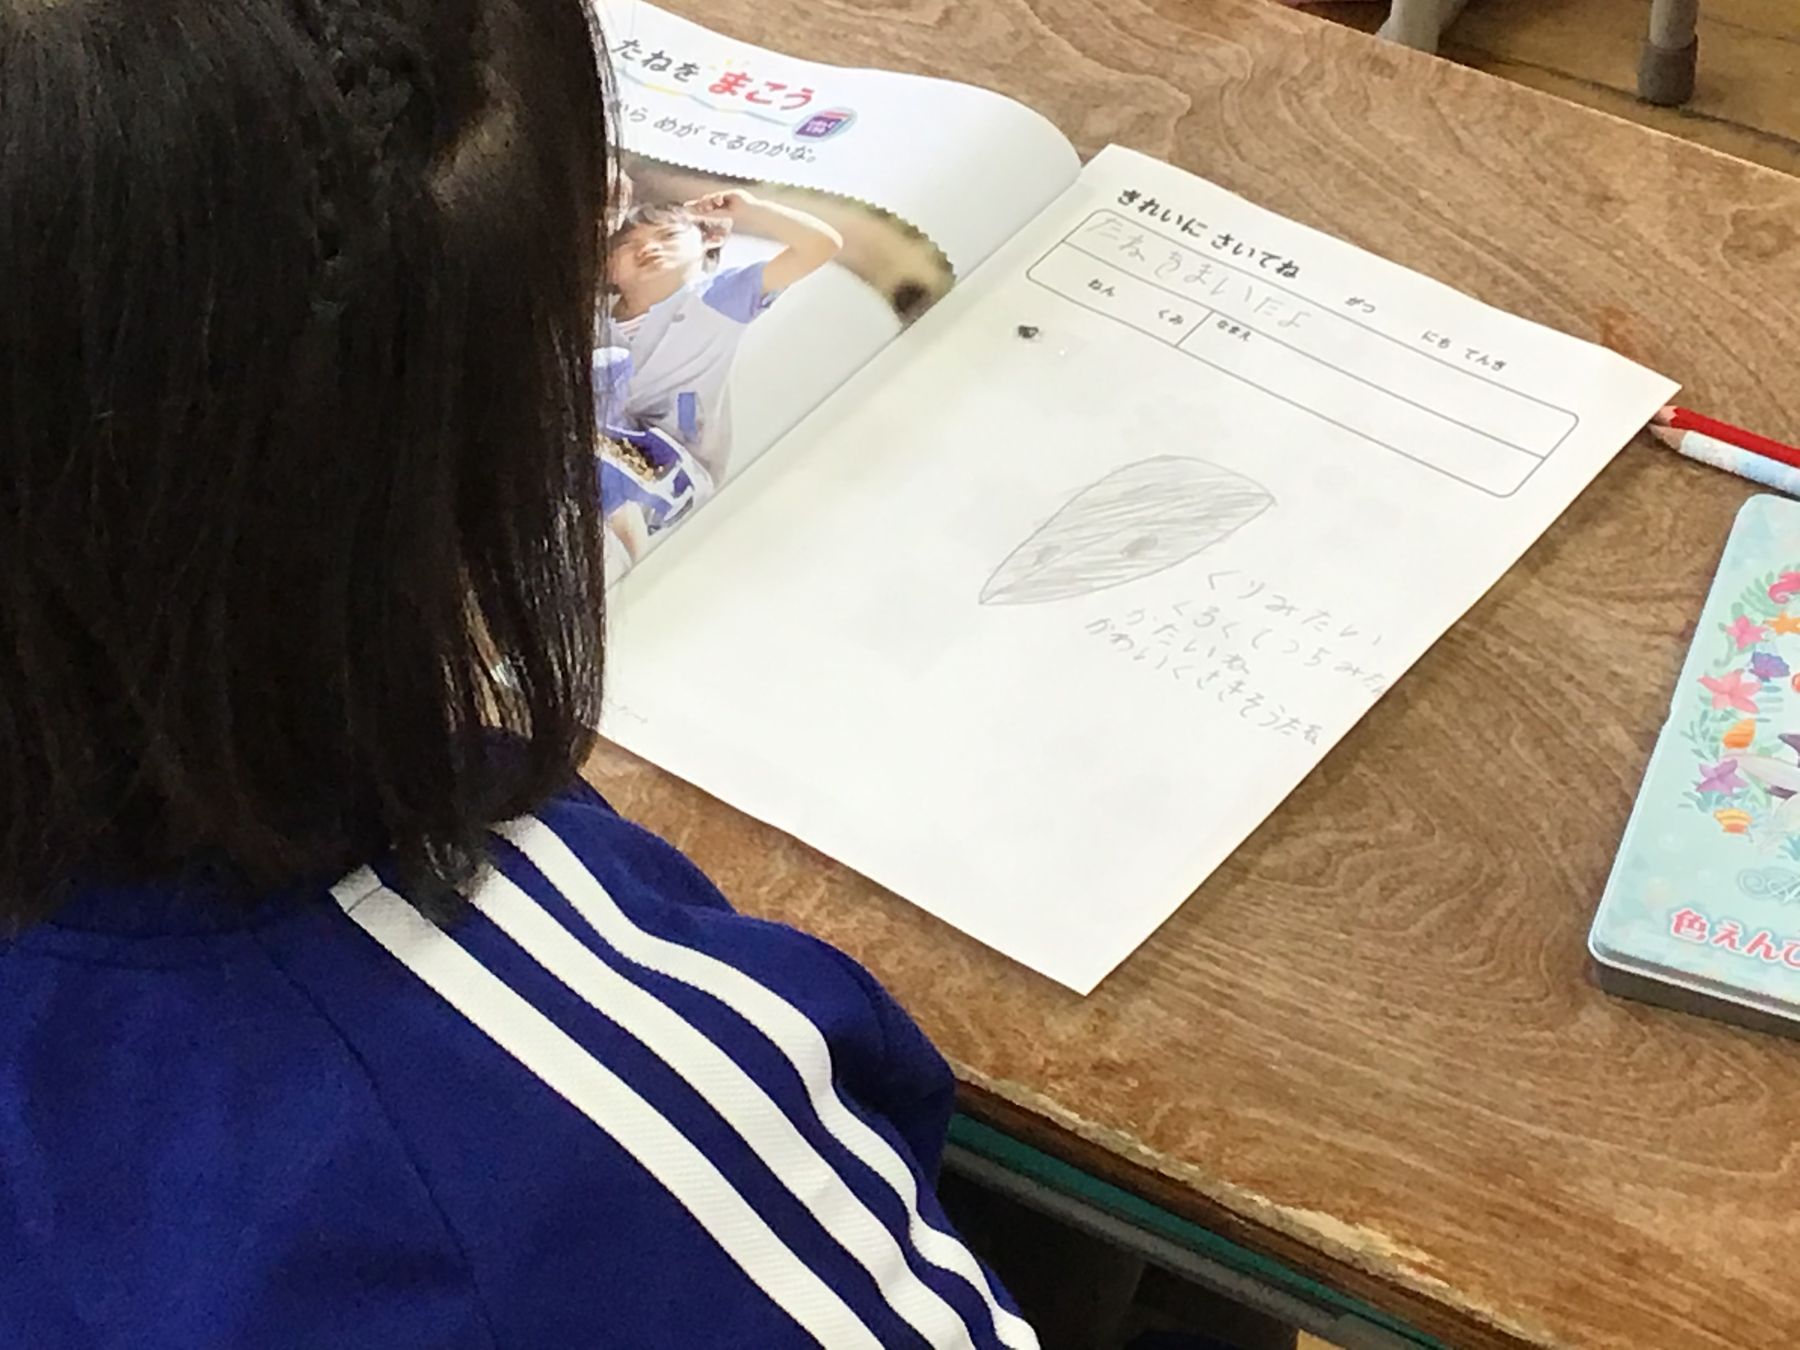 教室の机に向かい、ノートに書いた朝顔の種の絵を見ている女の子の写真